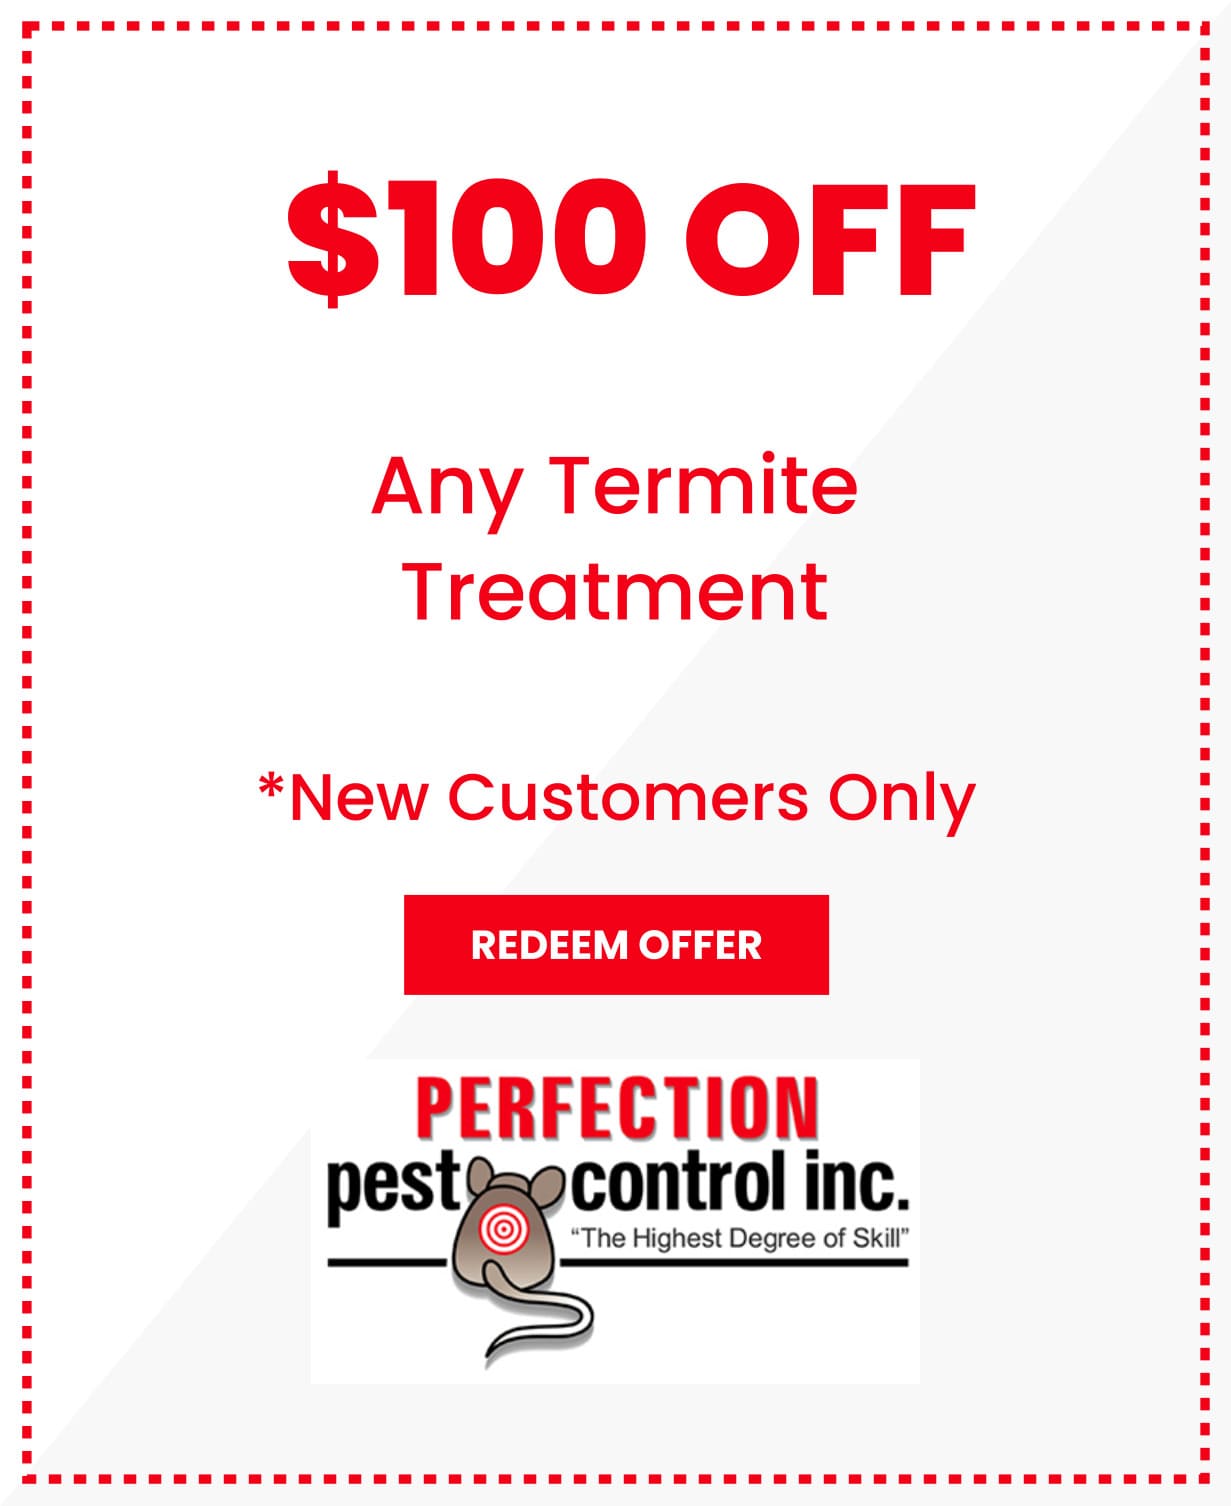 Any Termite Treatment